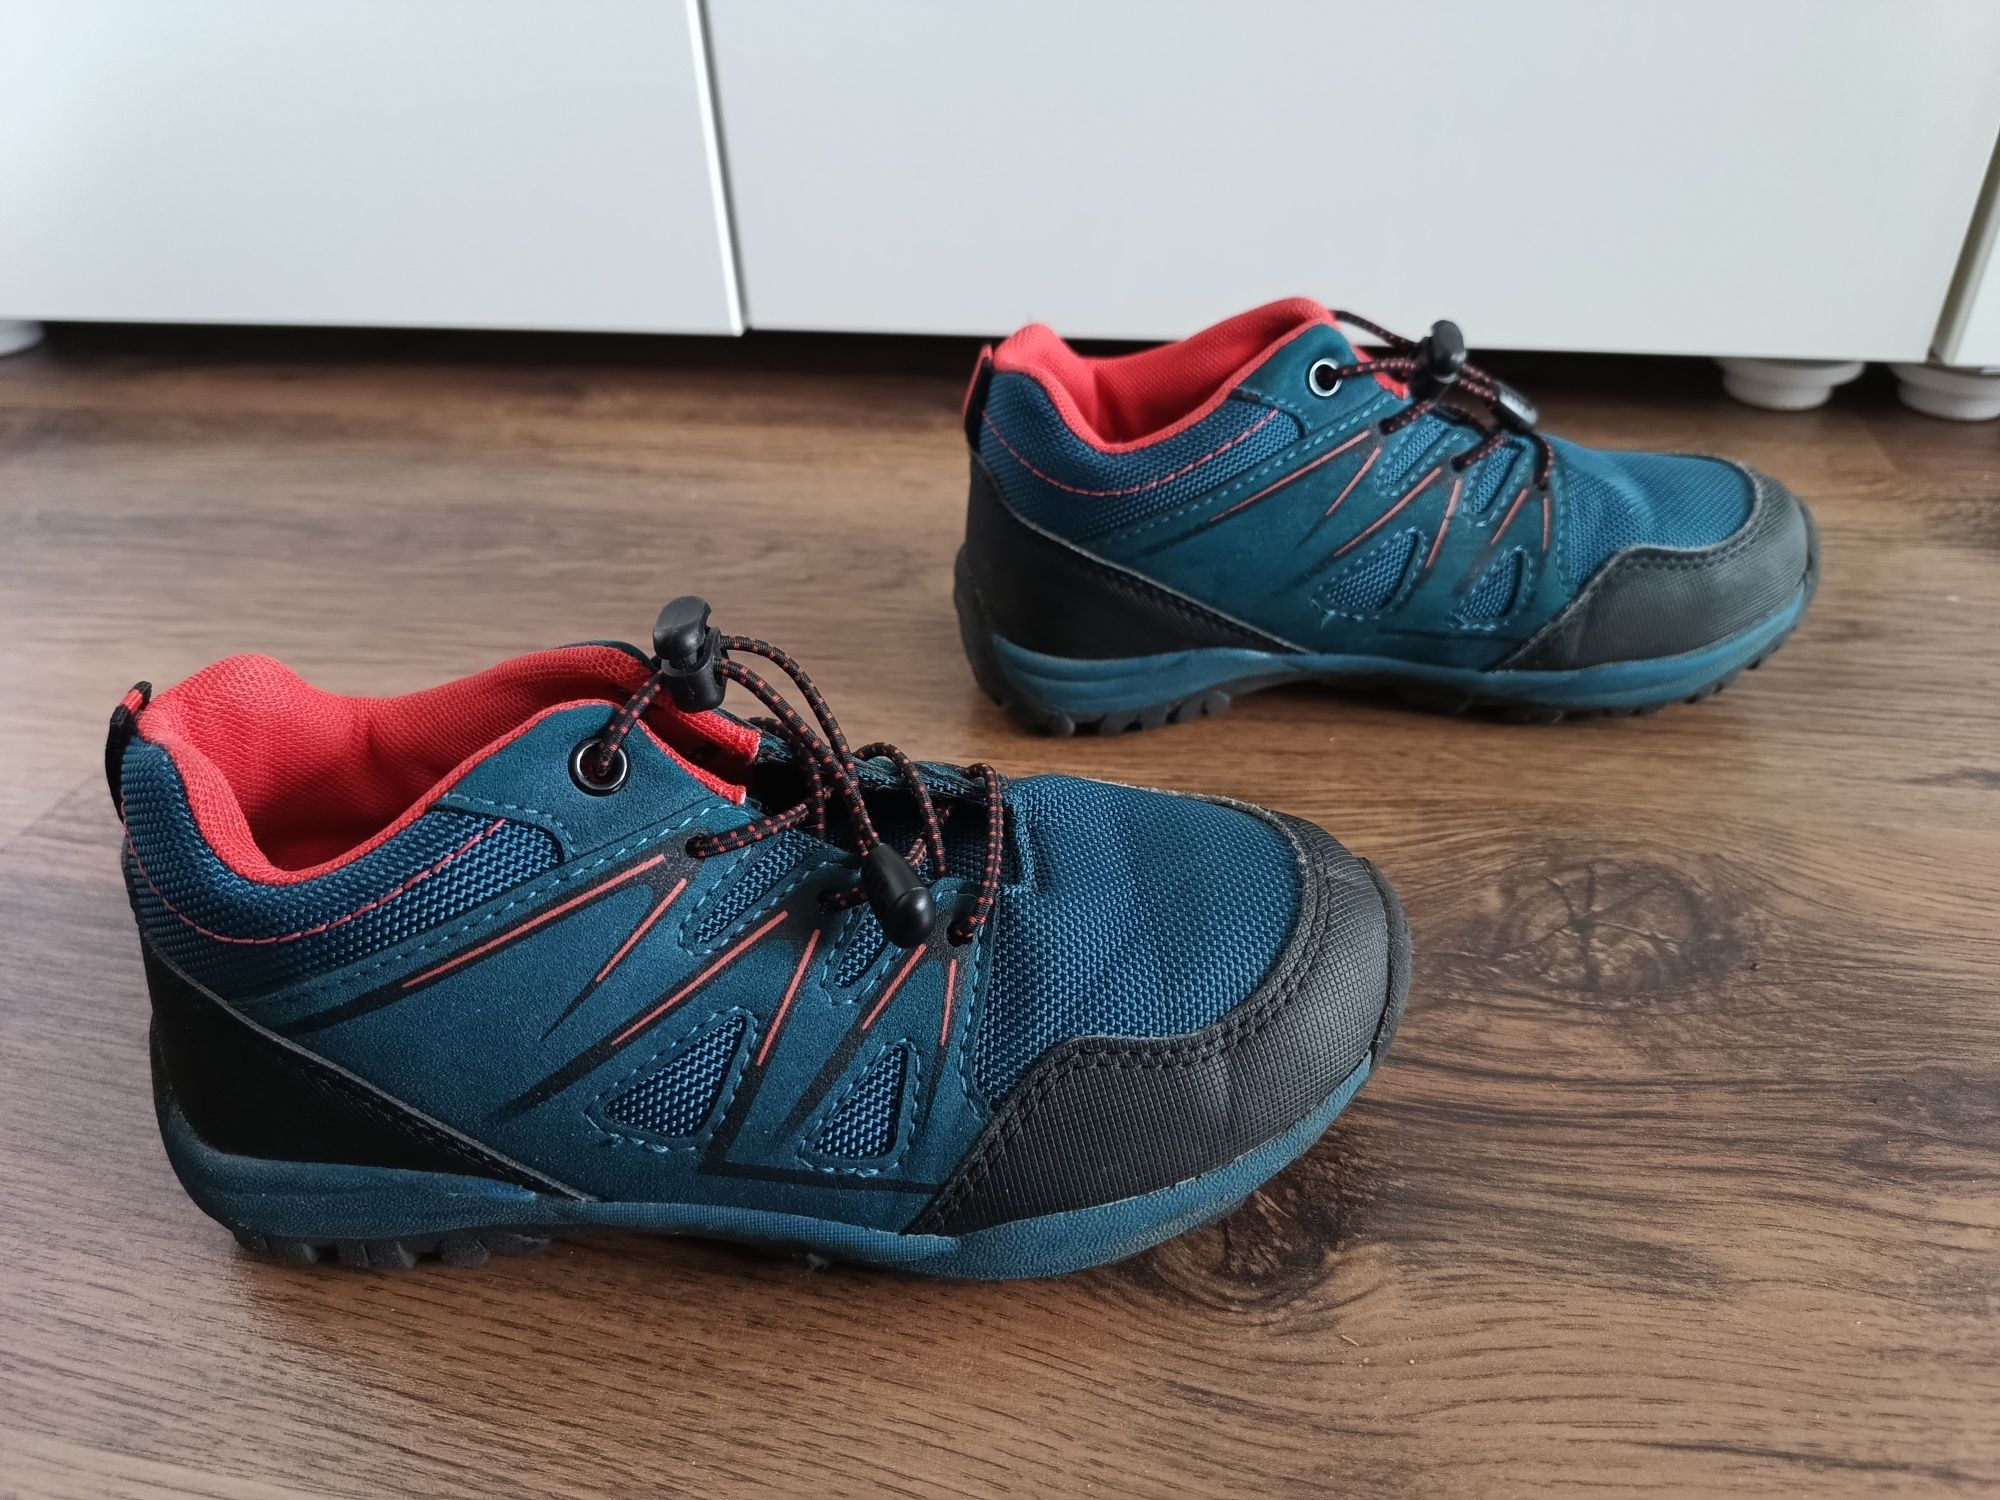 Hip&Hopps buty, wkładka 20,5 cm, rozmiar 31, w super stanie Poznań.